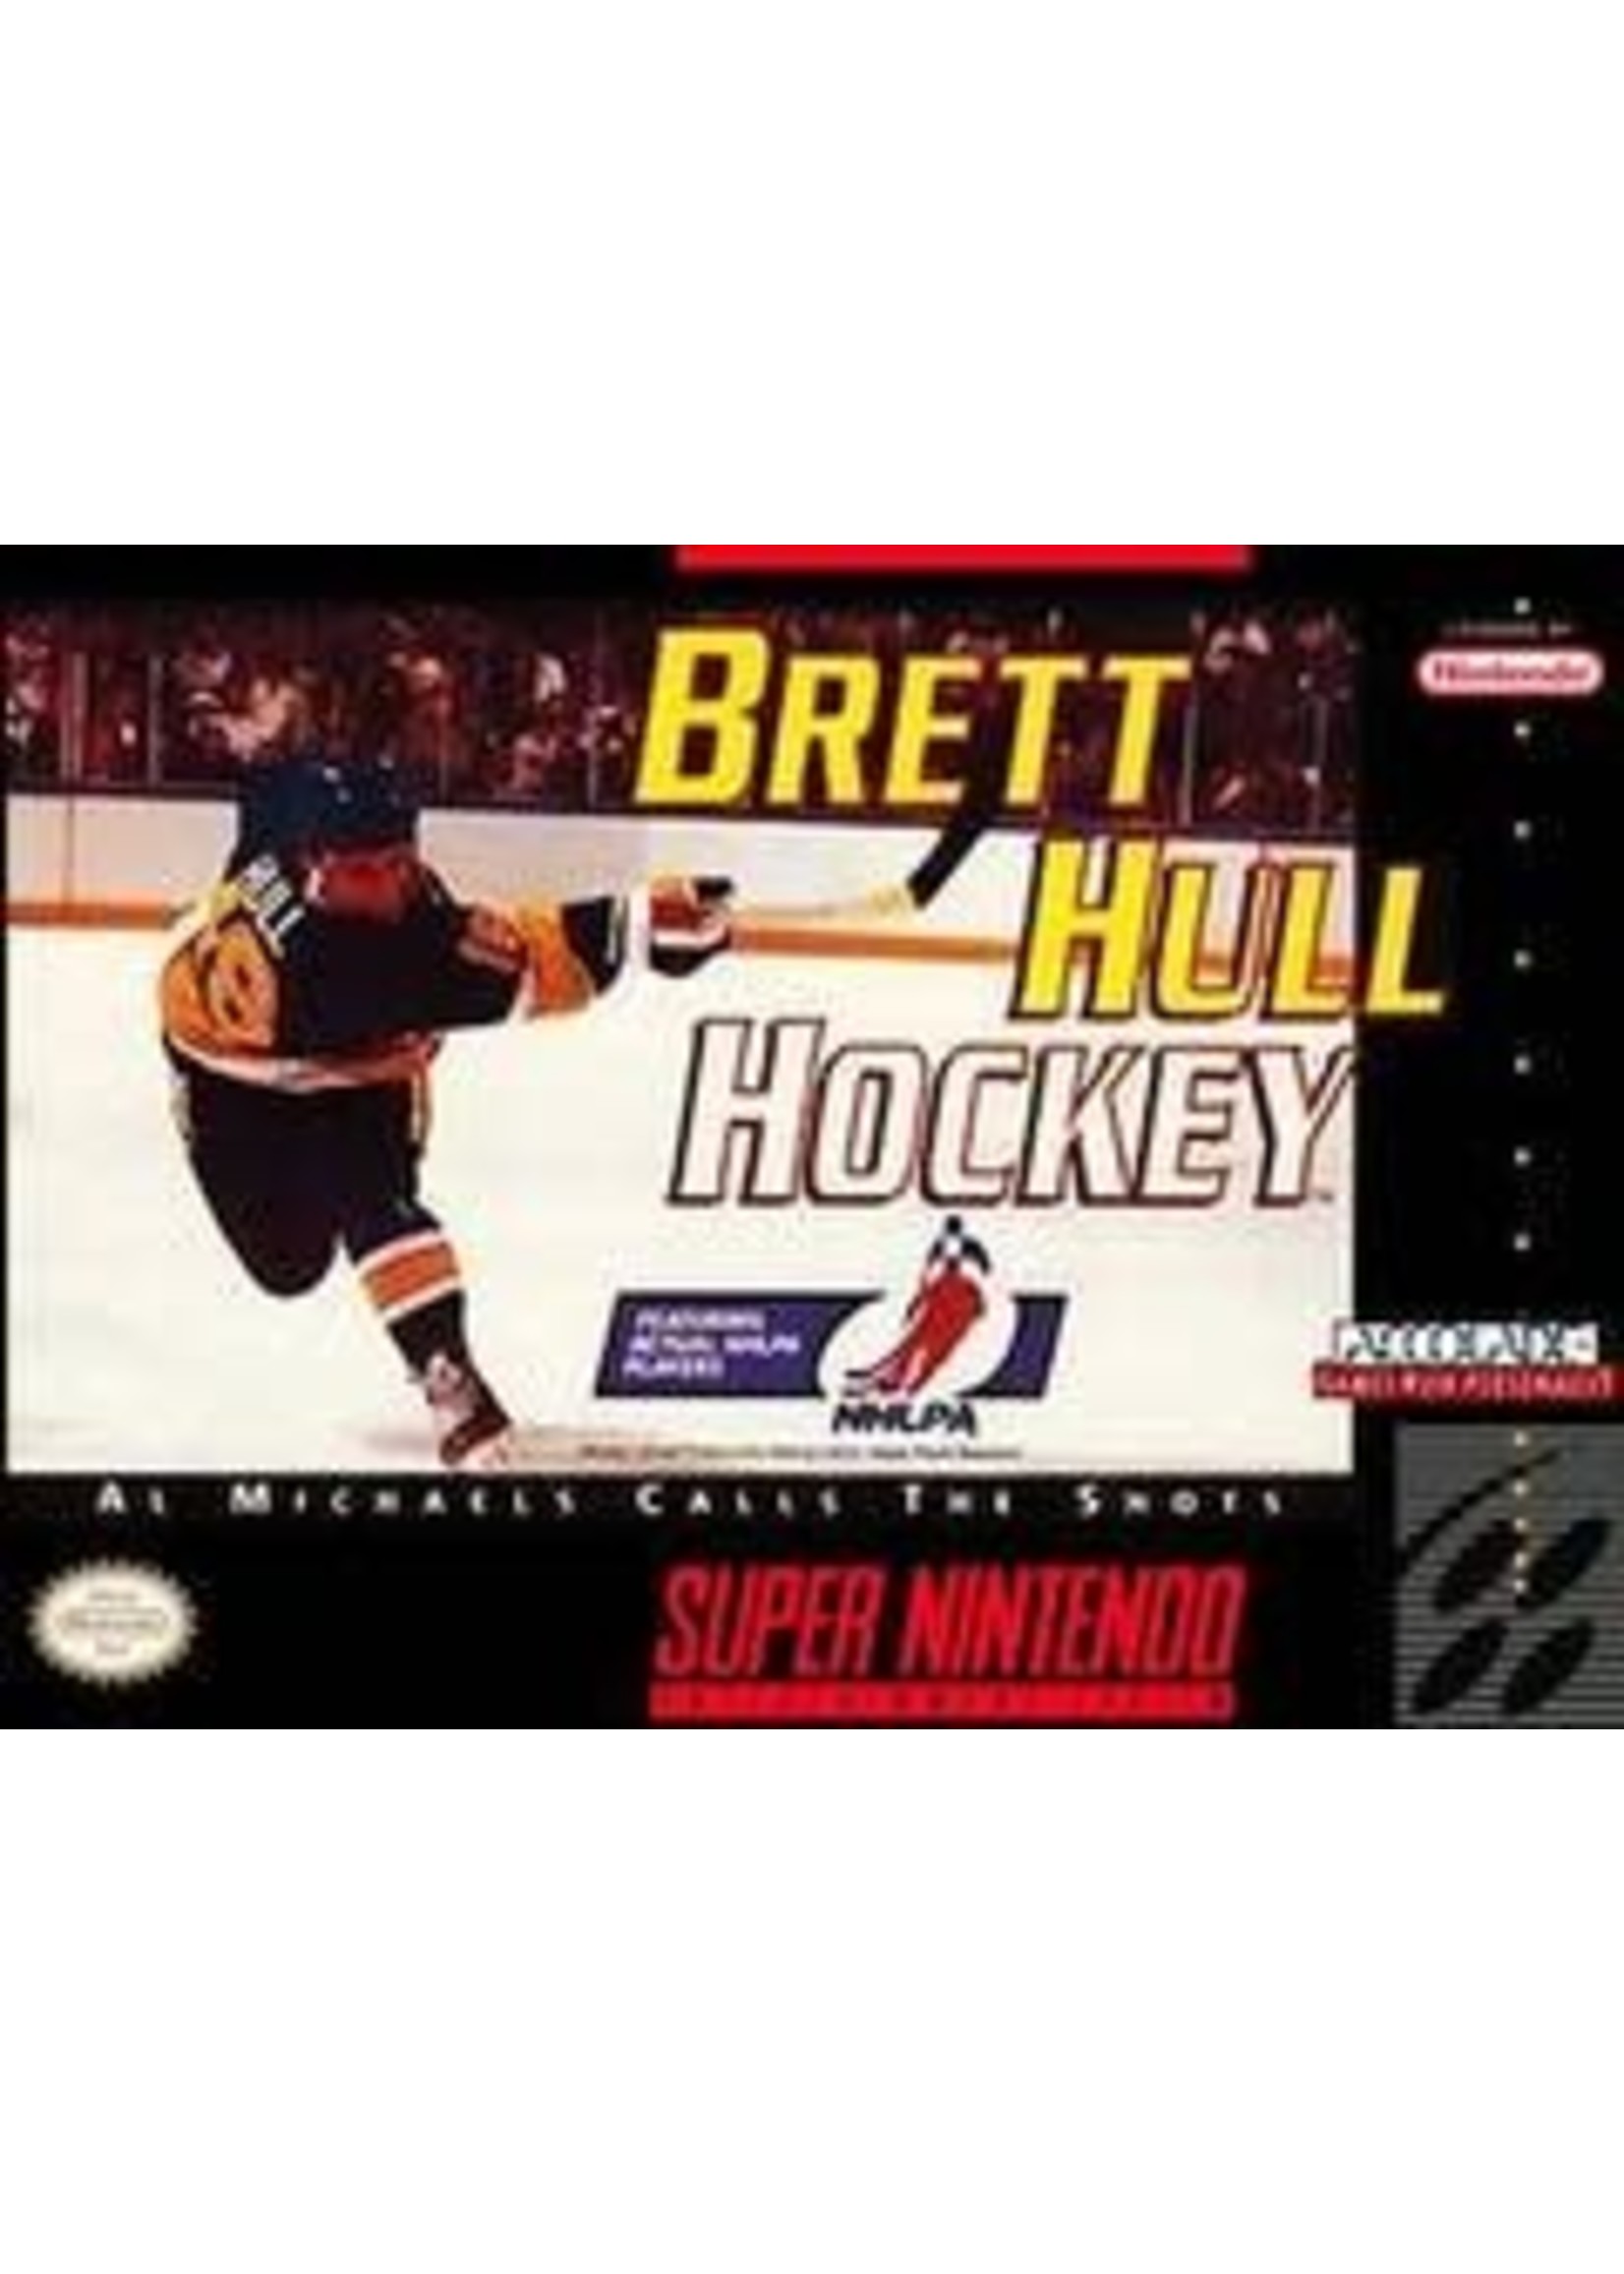 Brett Hull Hockey Super Nintendo CART ONLY